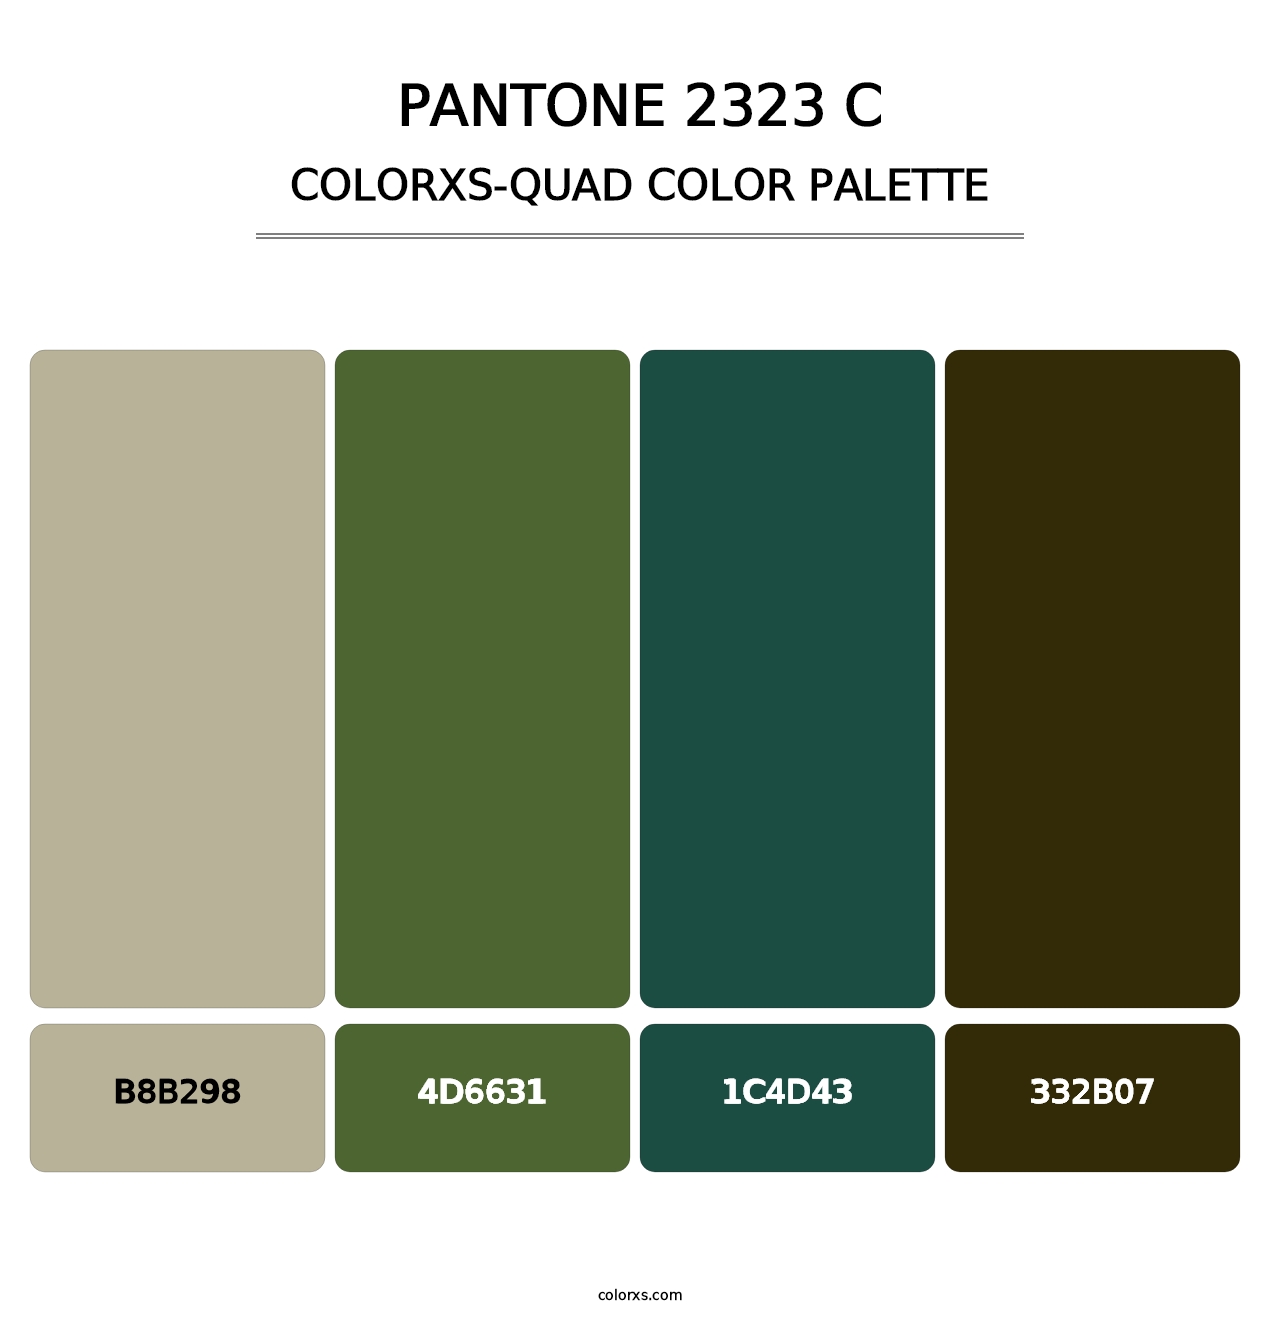 PANTONE 2323 C - Colorxs Quad Palette